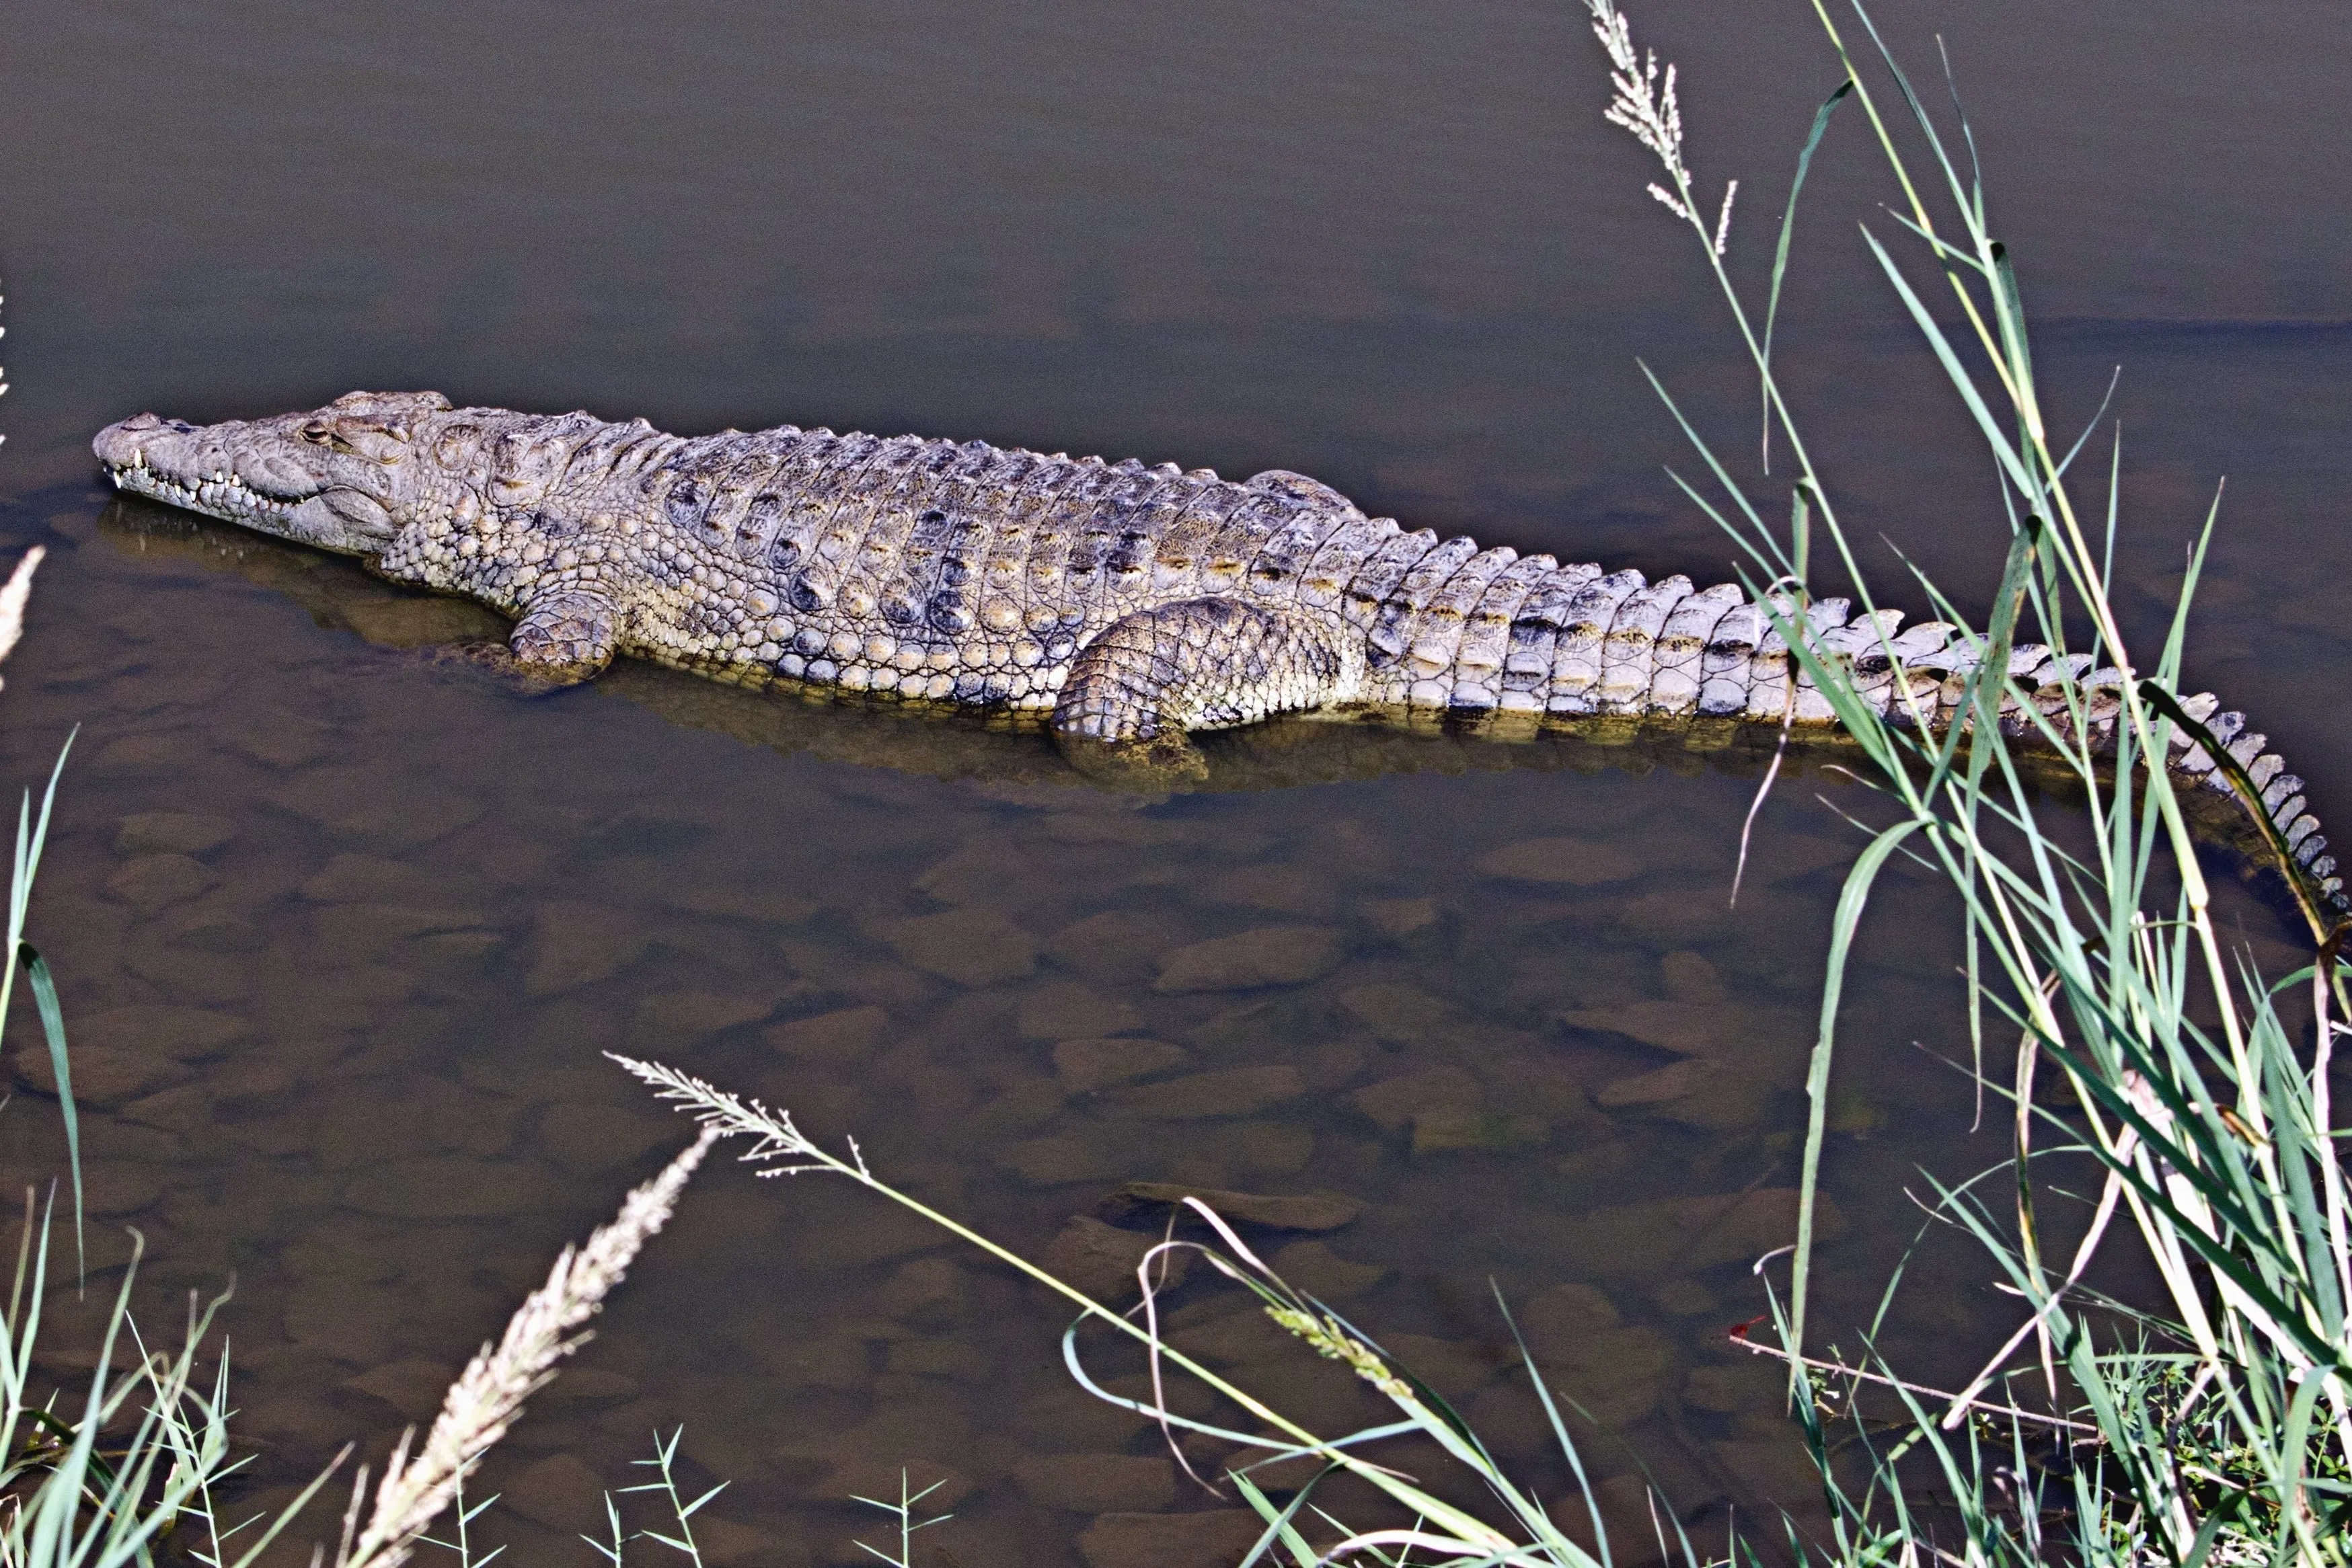  Снасть крокодил для рыбалки с берега 